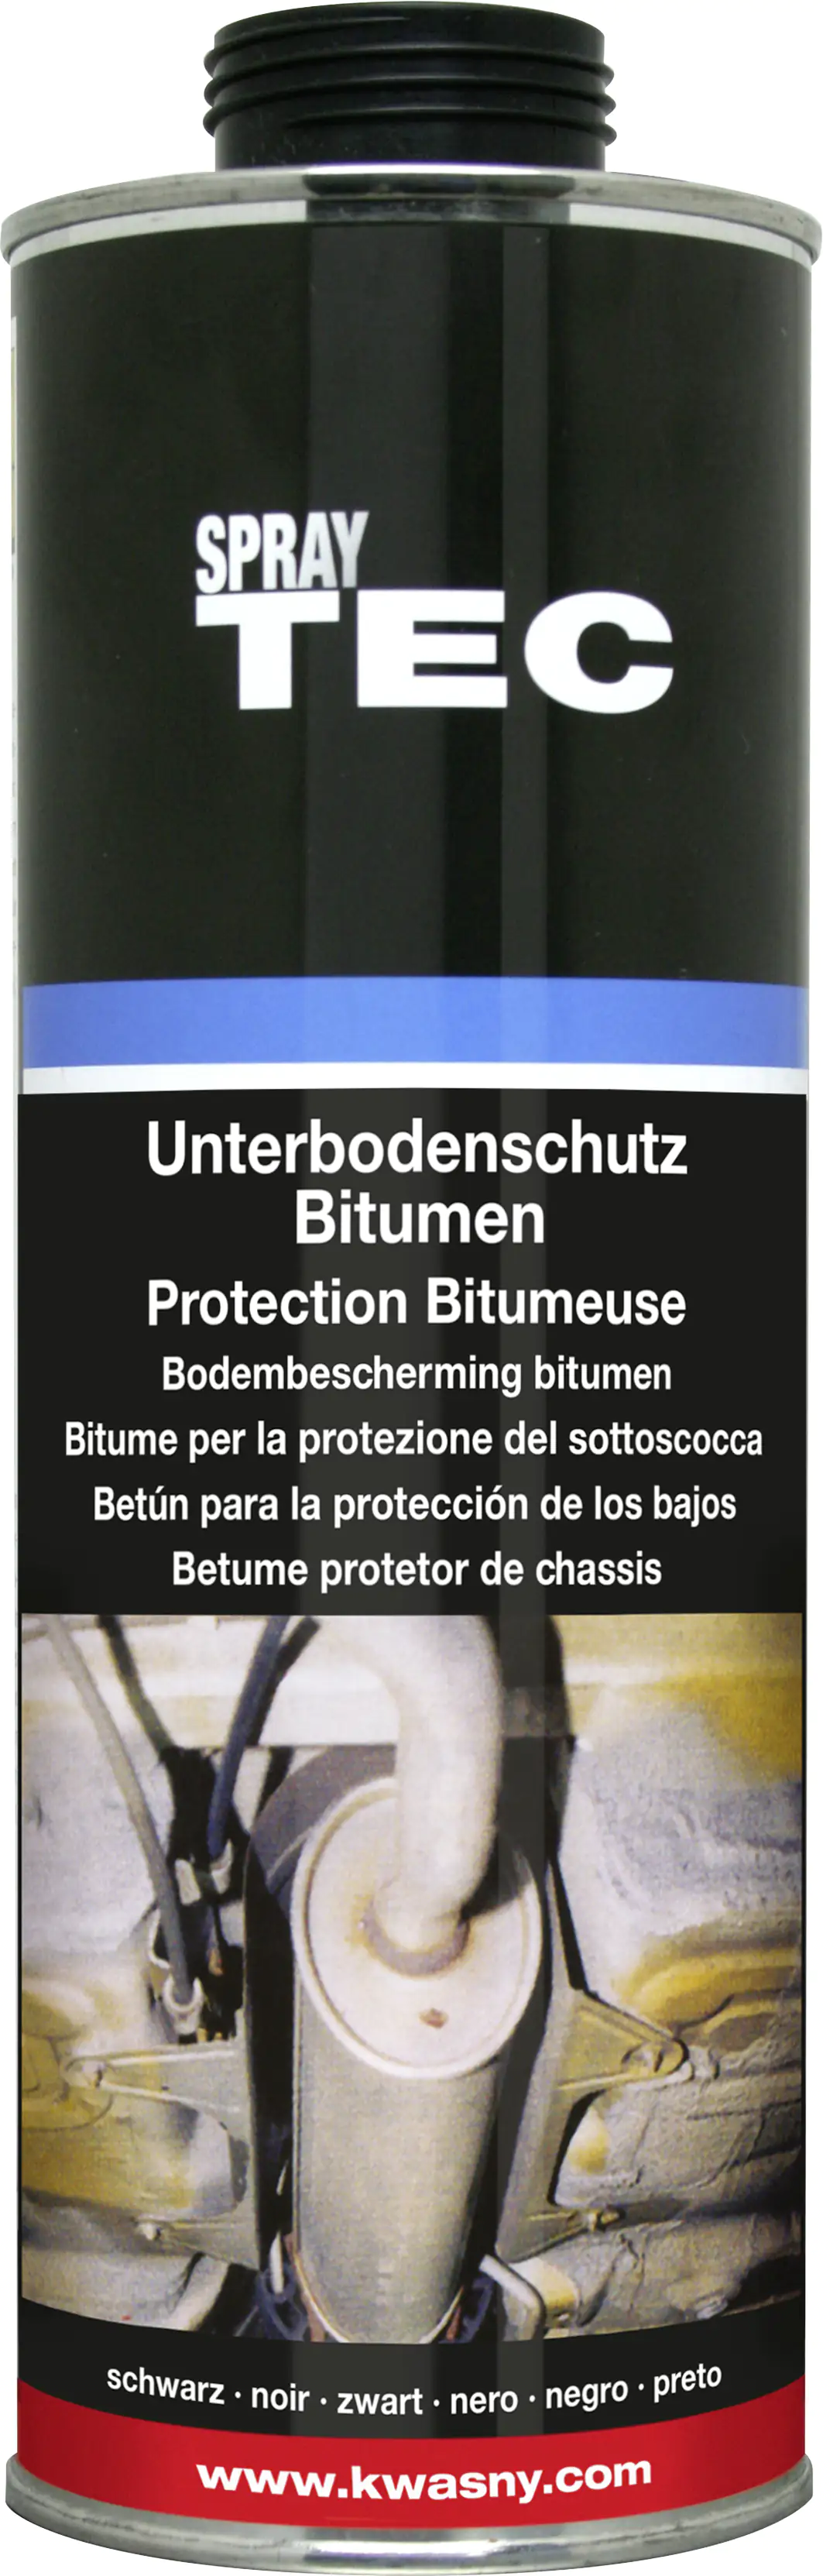 SprayTEC Unterbodenschutz Bitumen schwarz 1L kaufen